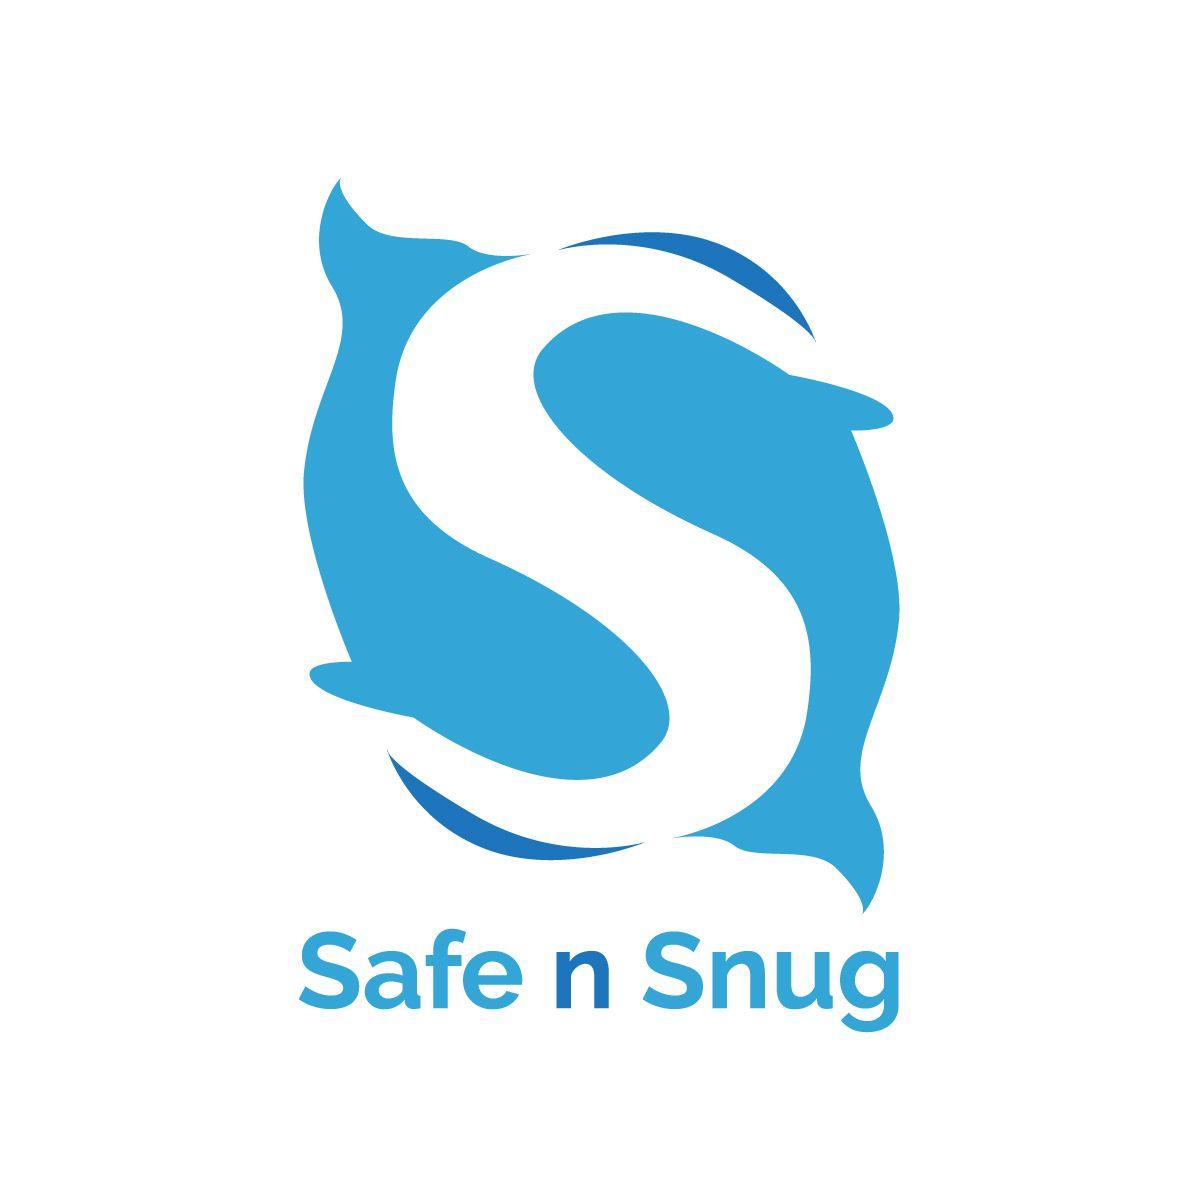 Cot Logo - Bold, Playful, Baby Care Logo Design for Safe n Snug